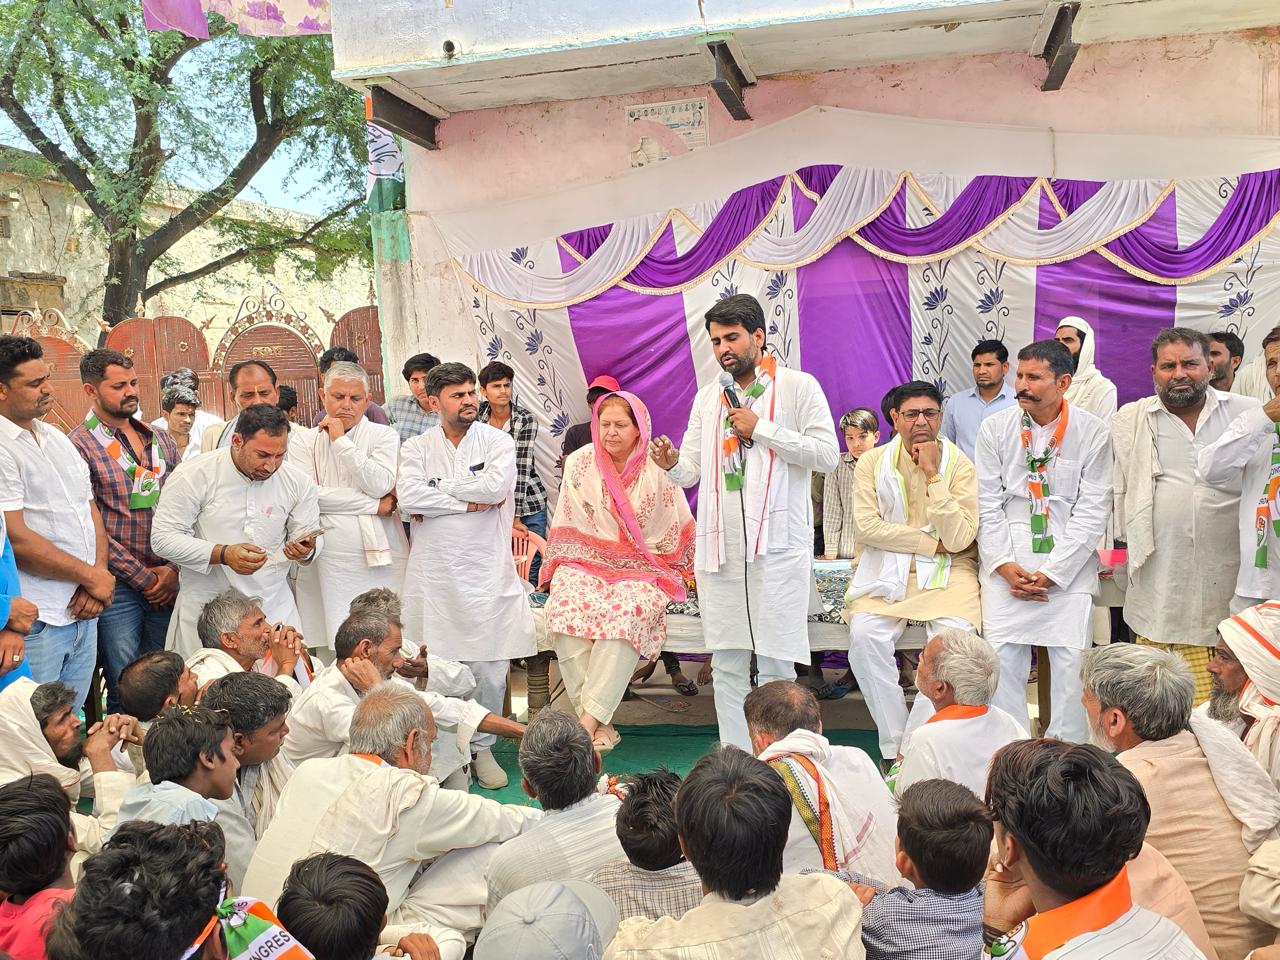 कांग्रेस पार्टी के प्रत्याशी ललित यादव ने आज रामगढ़ विधानसभा क्षेत्र के विभिन्न गांव का दौरा कर जन समर्थन जुटाया